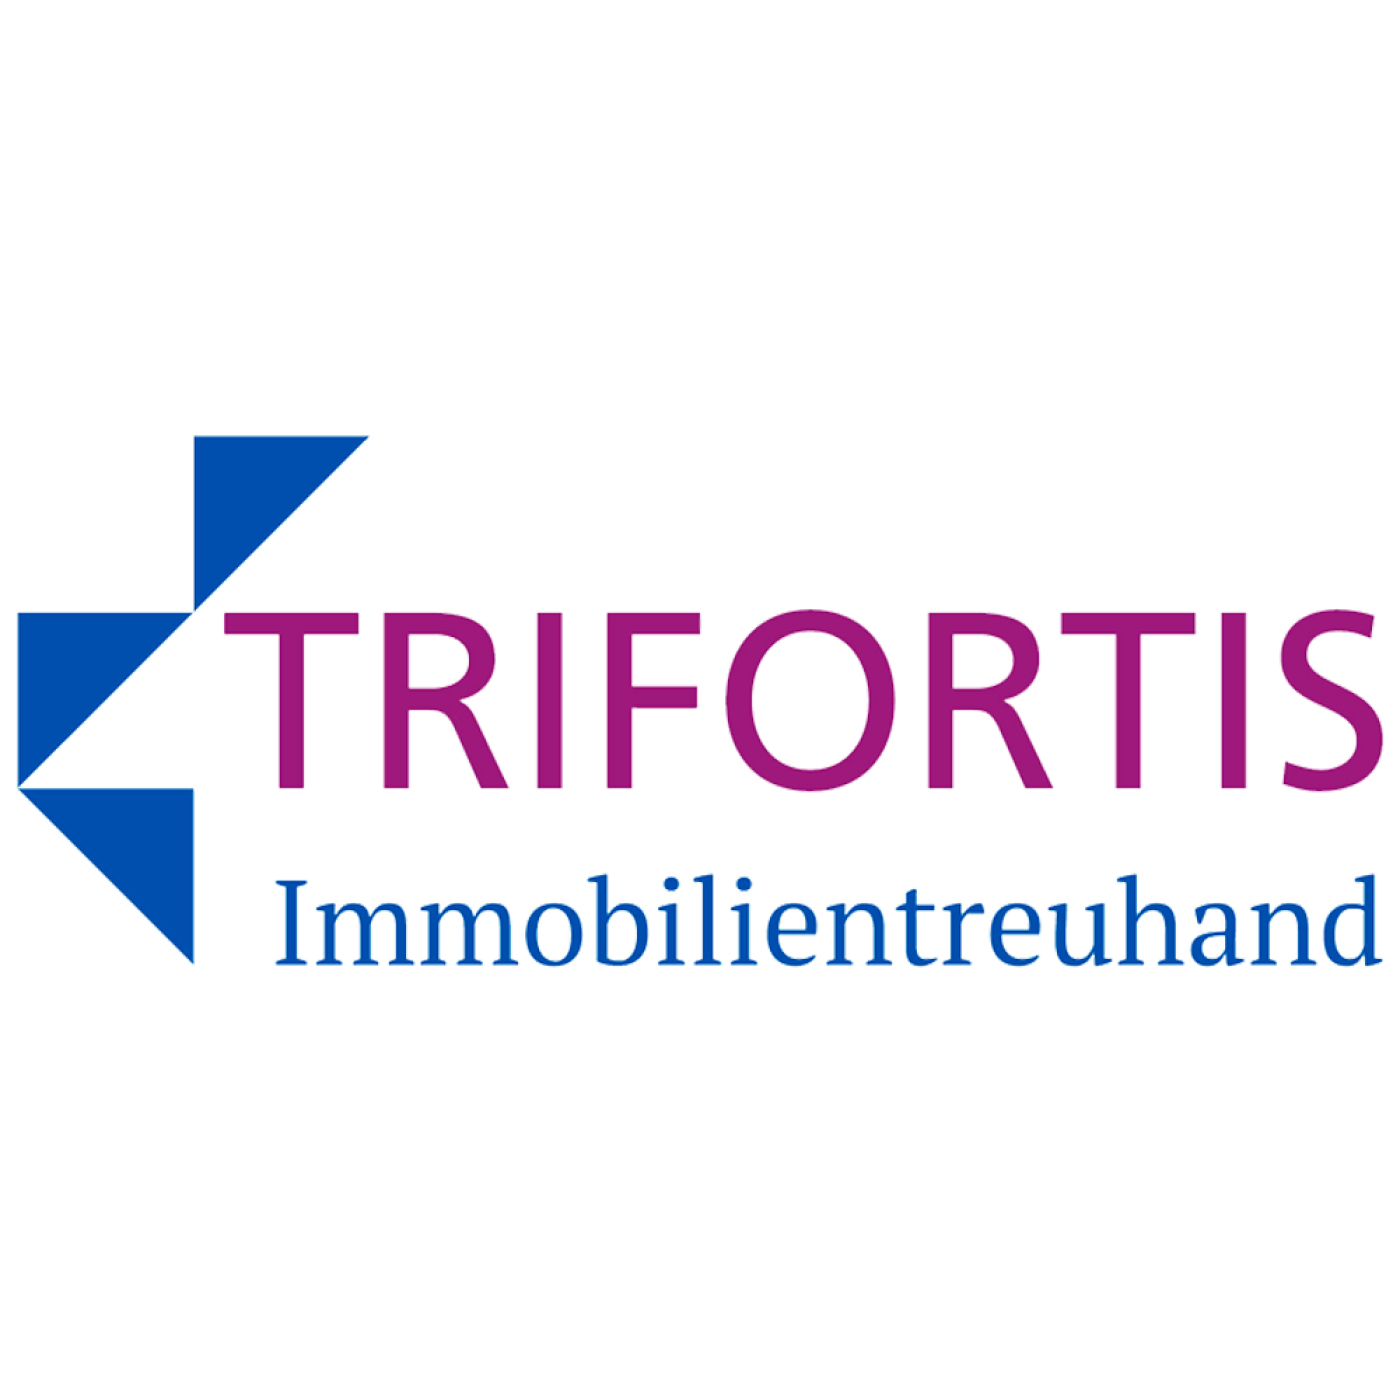 Referenzen Trifortis GmbH